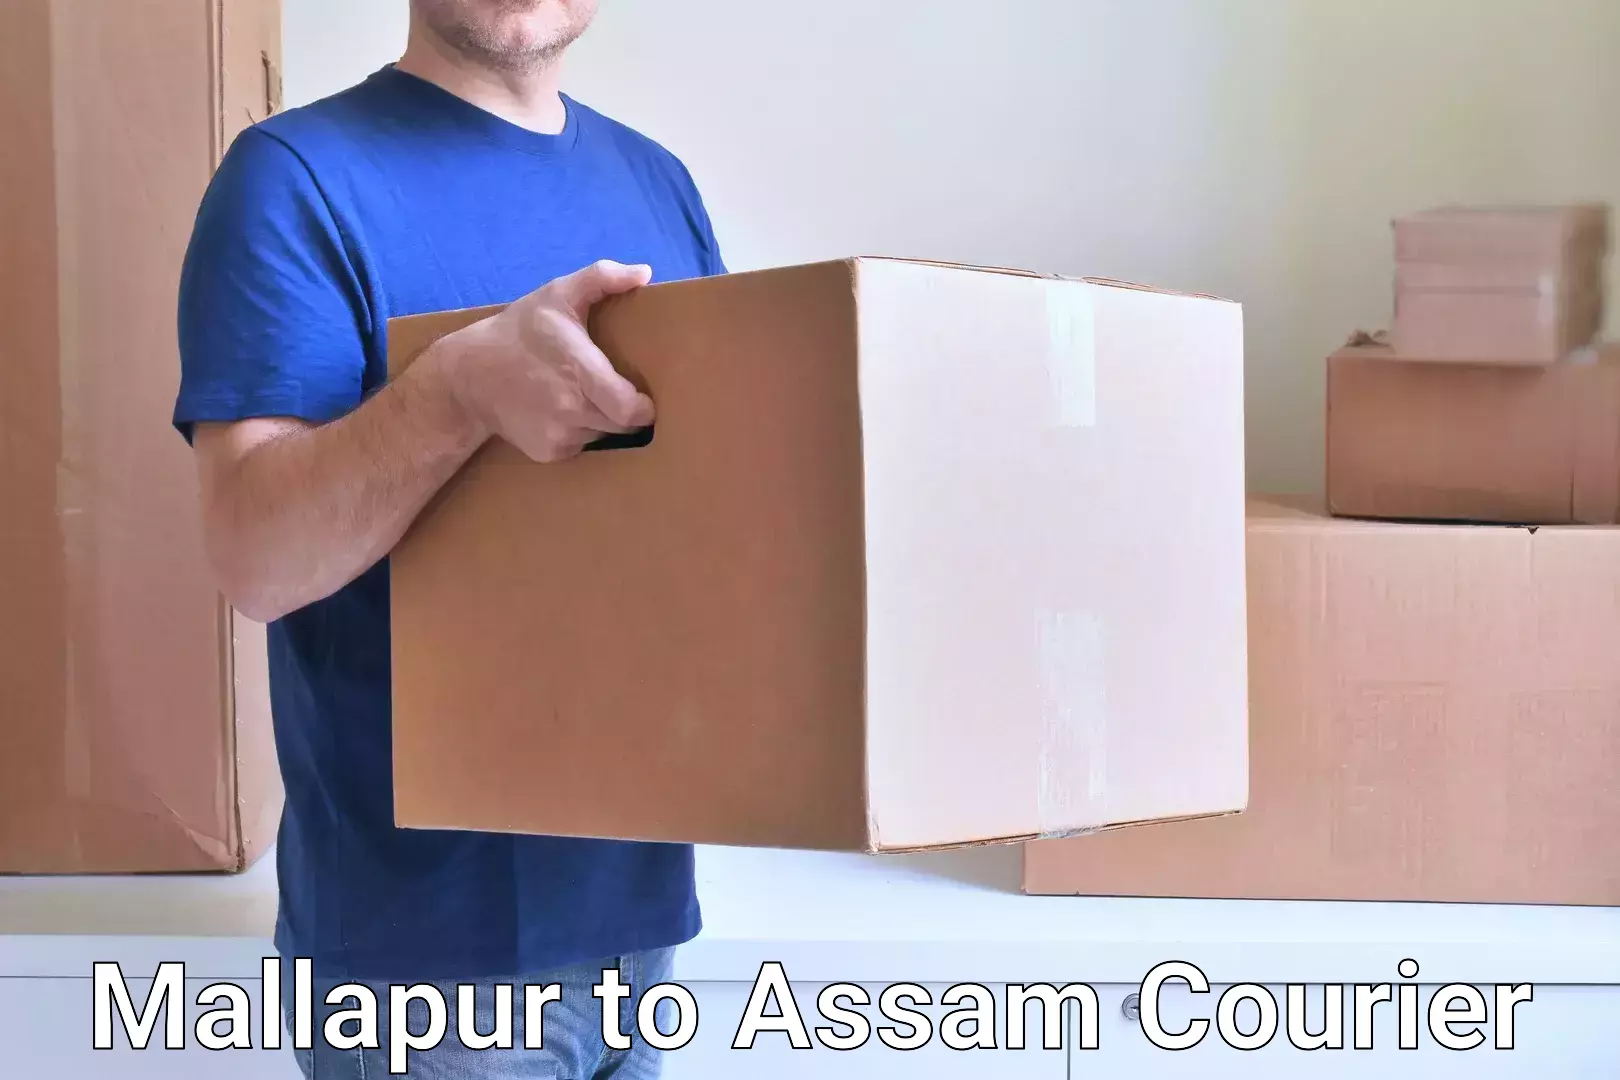 Courier service comparison Mallapur to Bilasipara